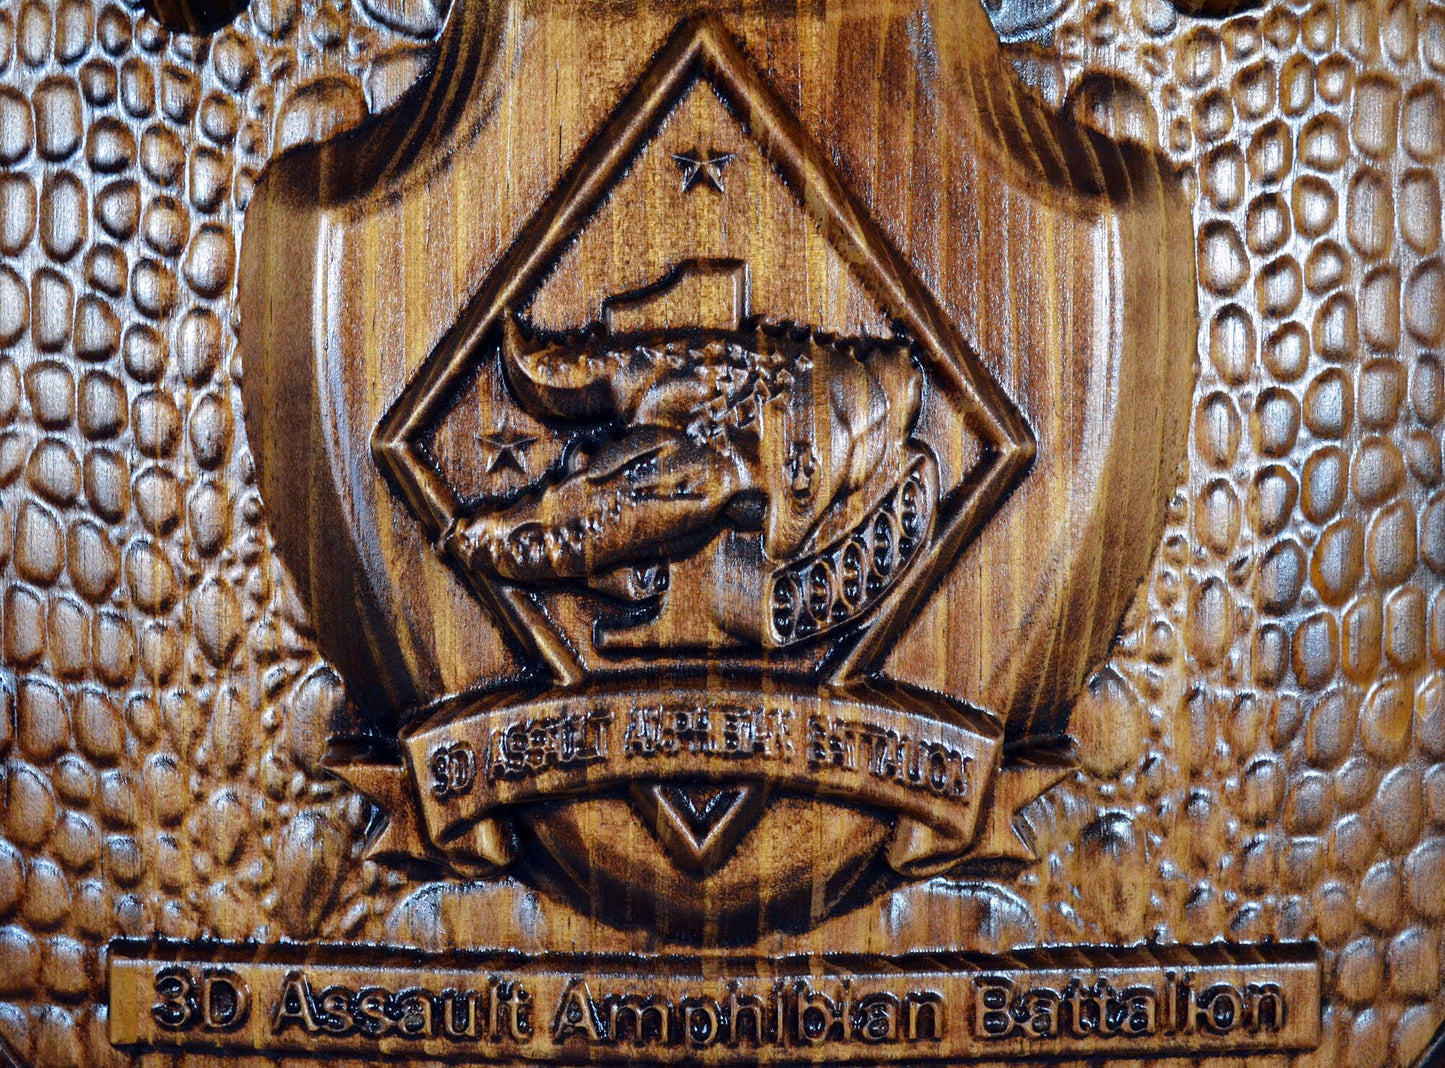 USMC 3rd Assault Amphibian Battalion, 3d wood carving, military plaque, armor style